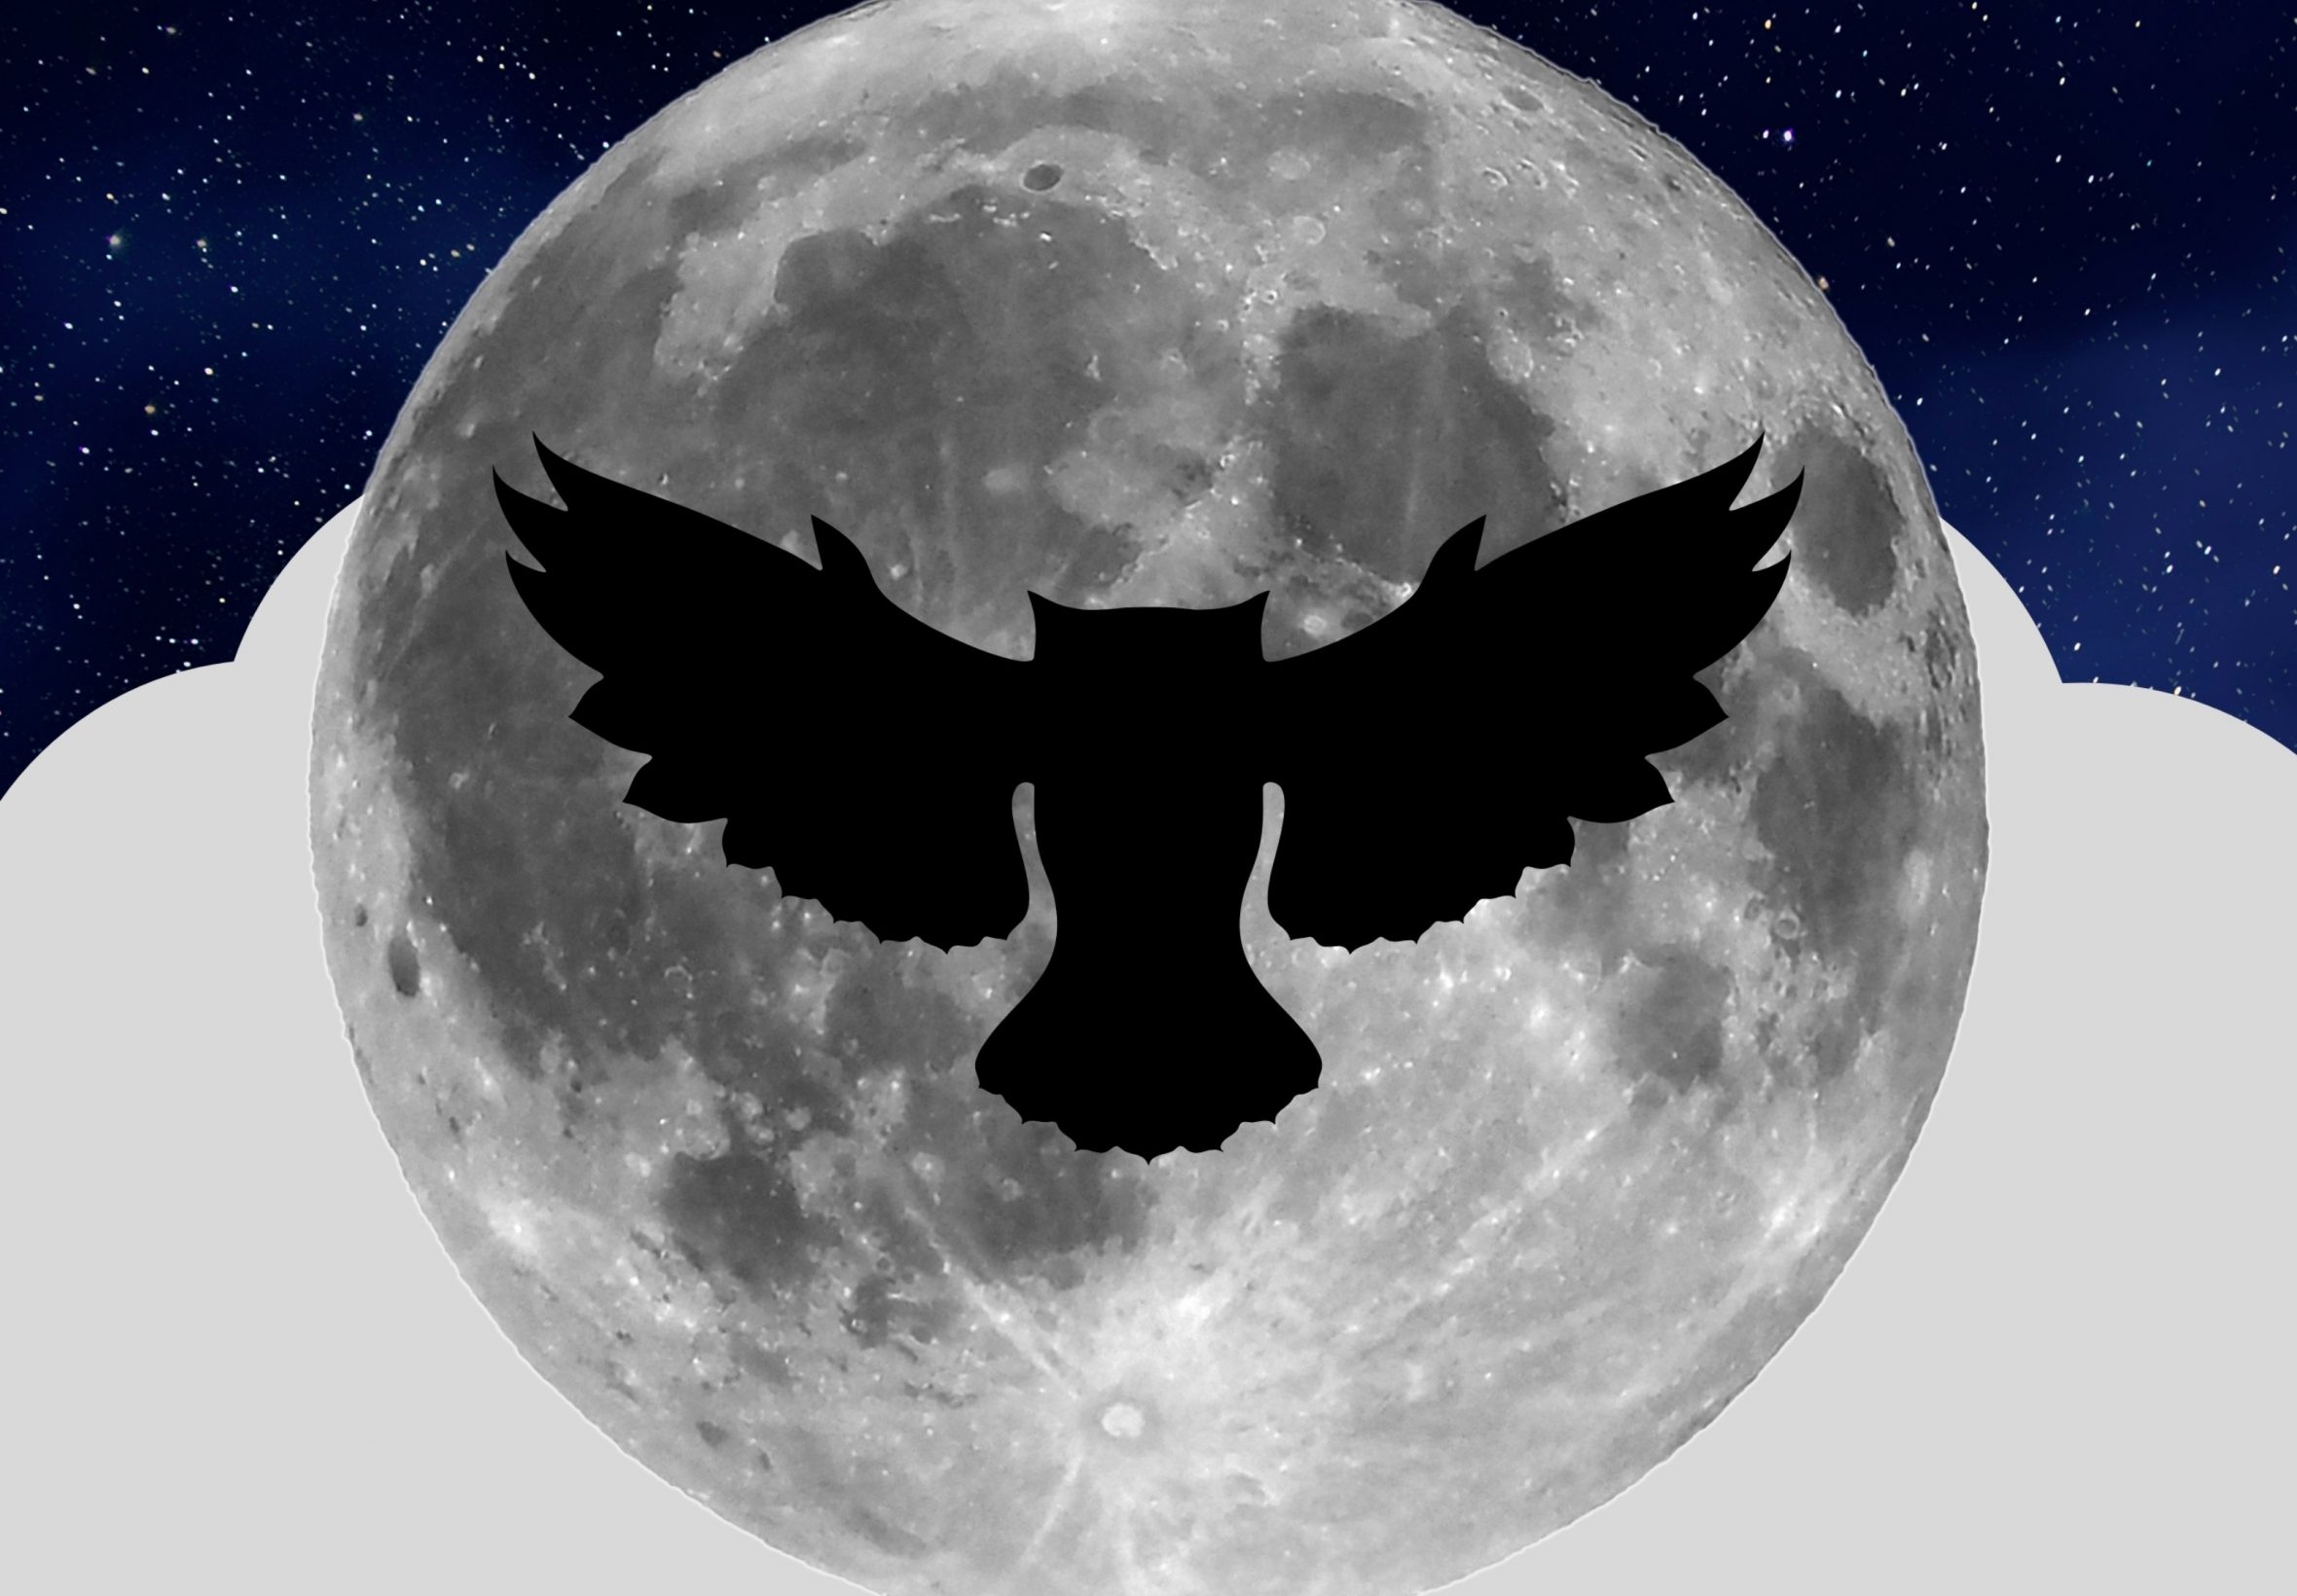 2360x1640 iPad Air wallpaper 4k Night Owl Full Moon iPad Wallpaper 2360x1640 pixels resolution